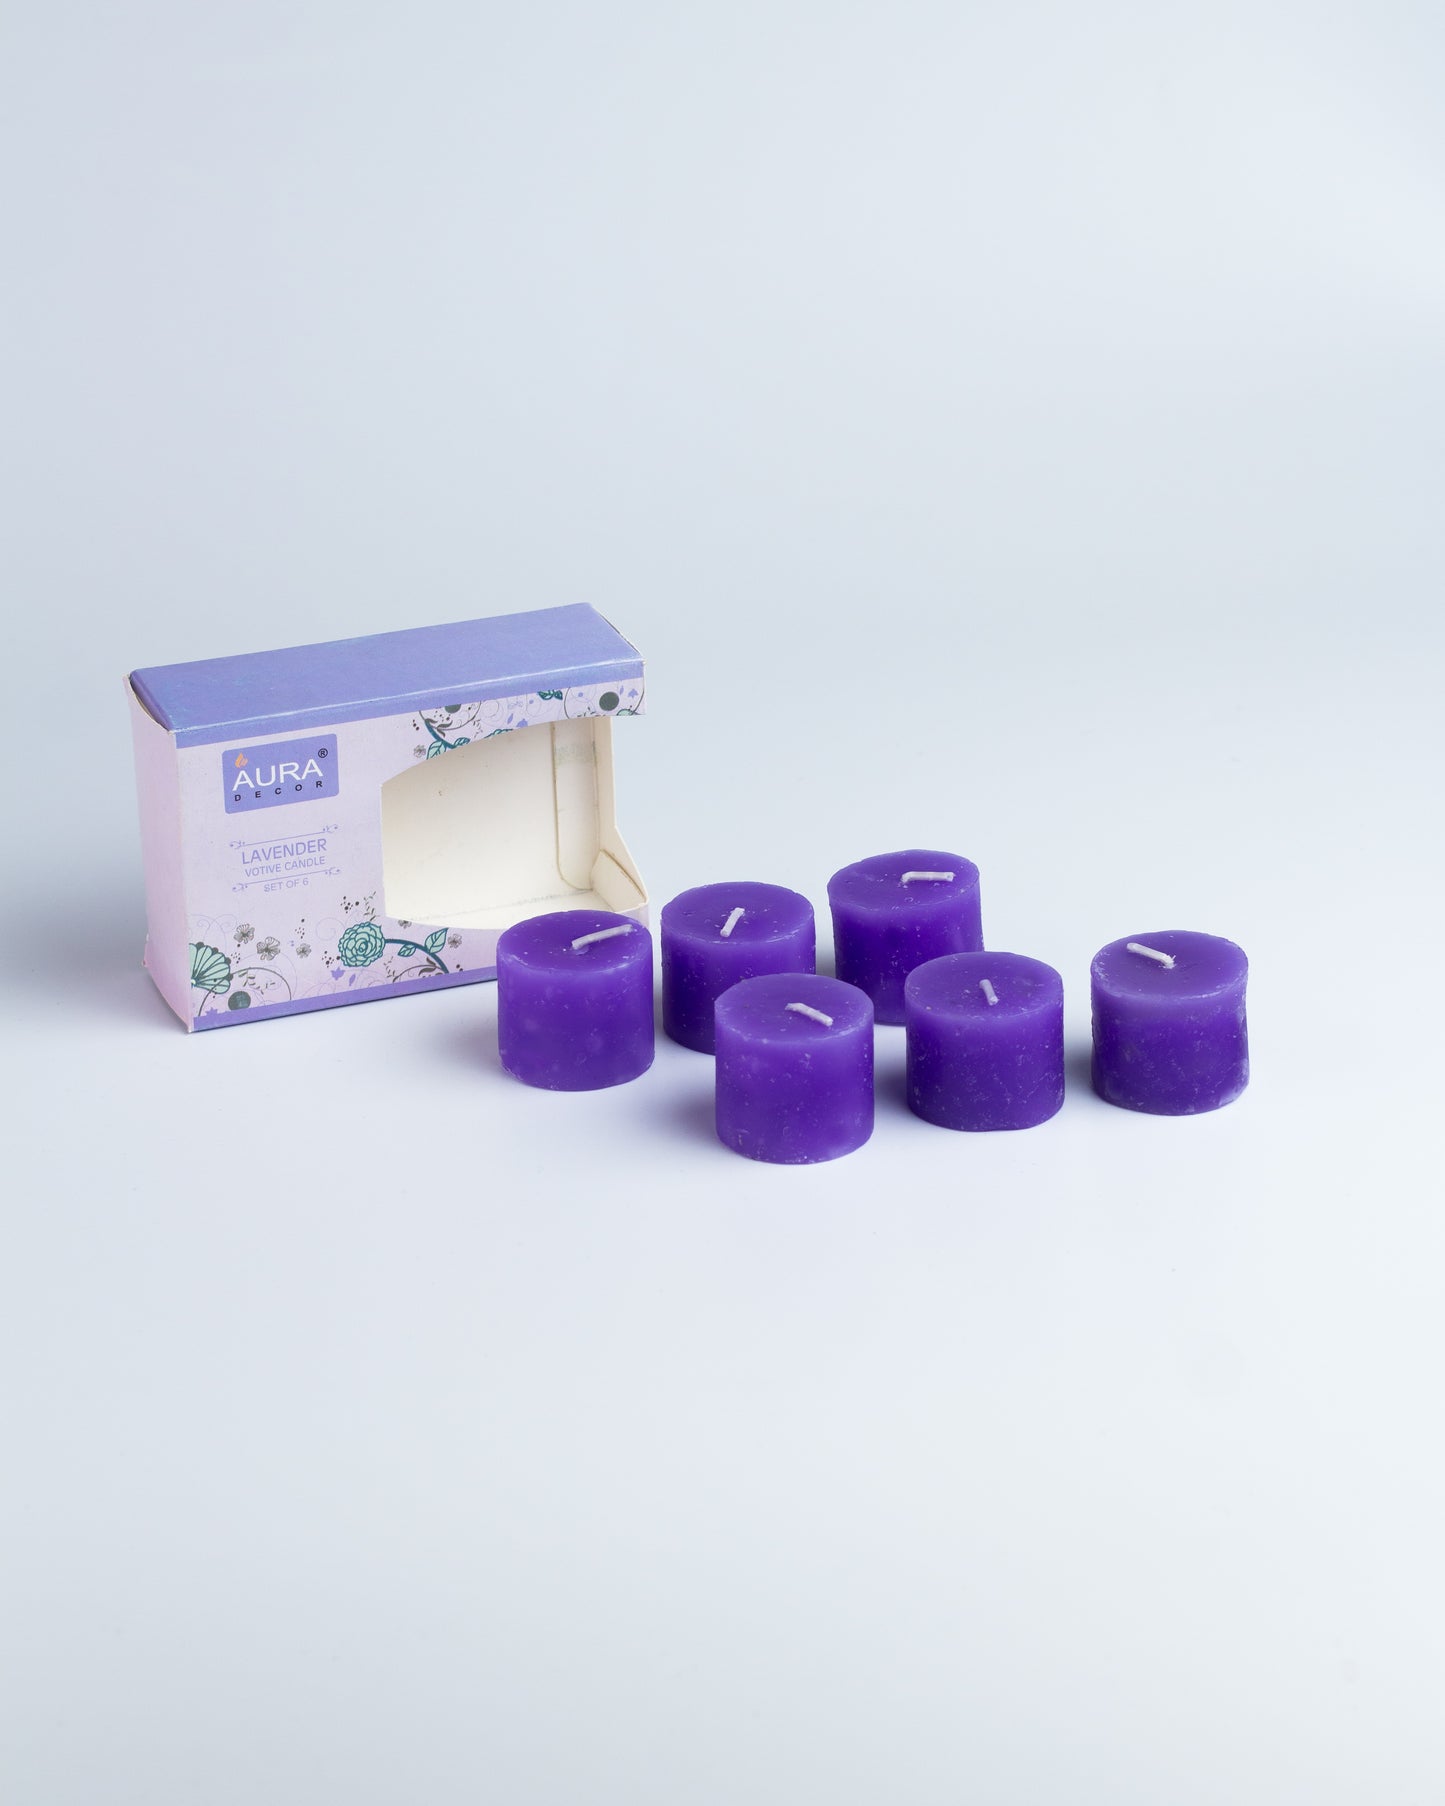 AuraDecor Fragrance Votive Candles Set of 6 ( Lavender )